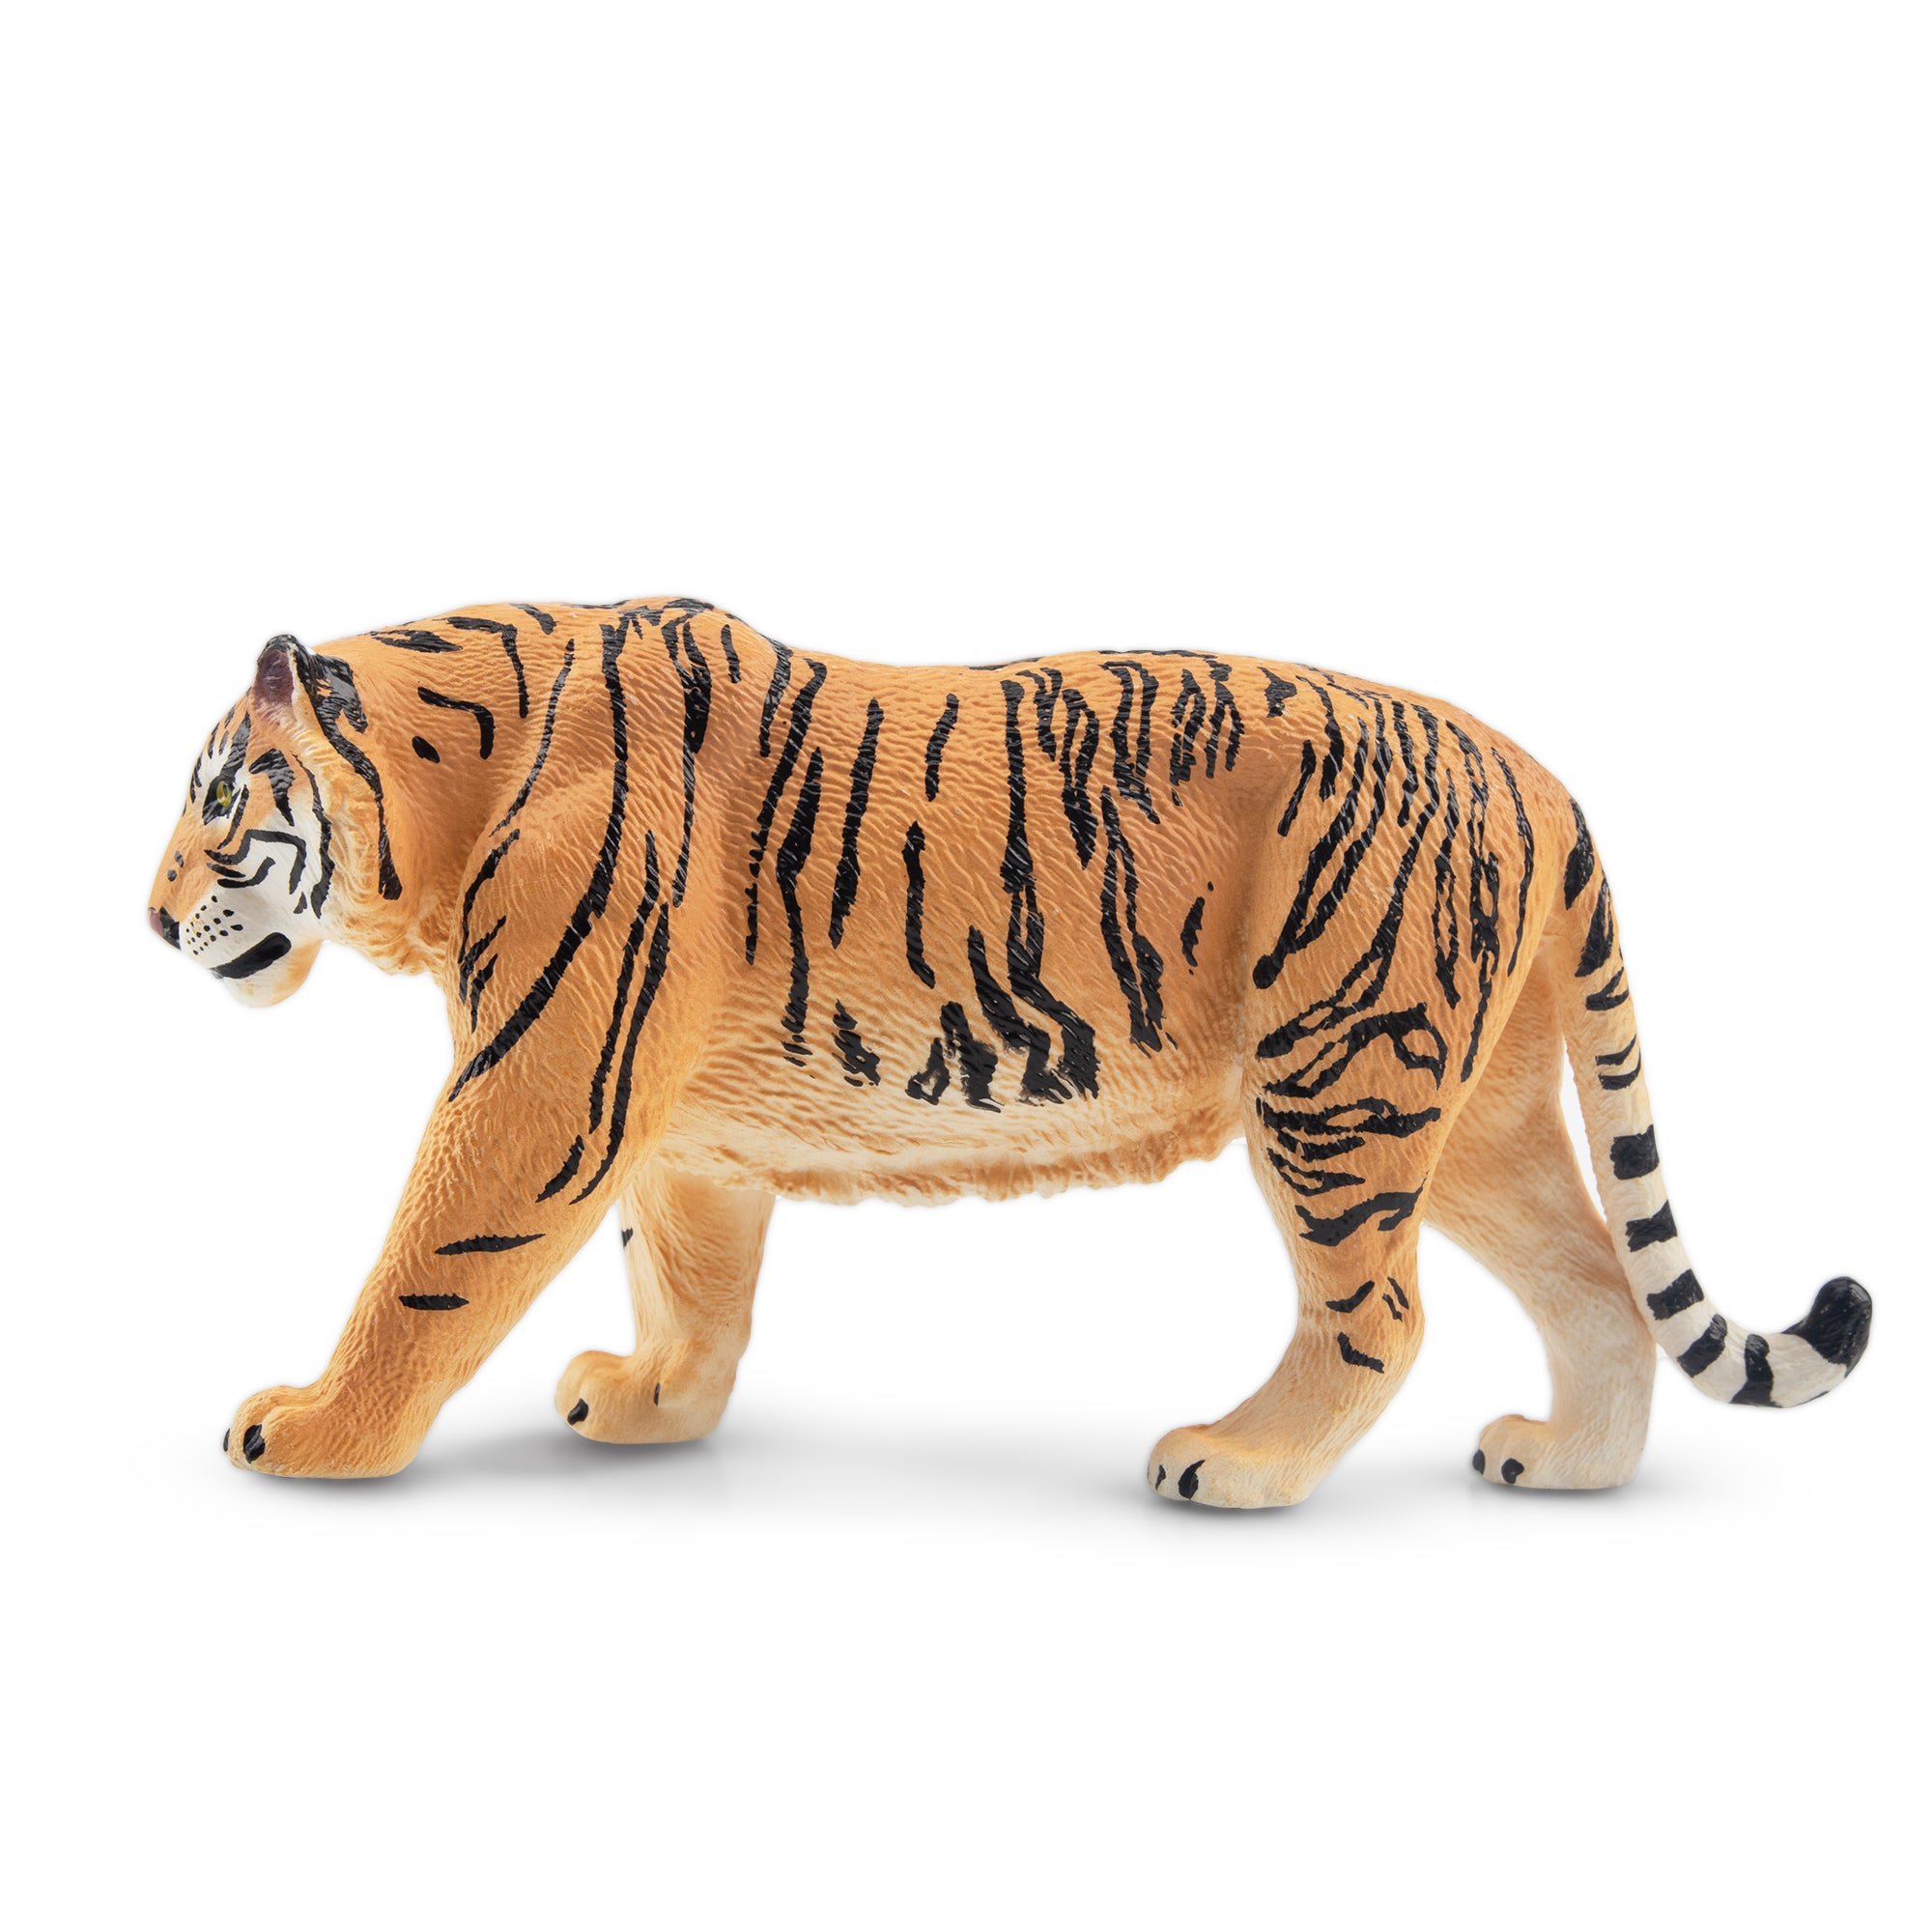 Toymany Tiger Figurine Toy